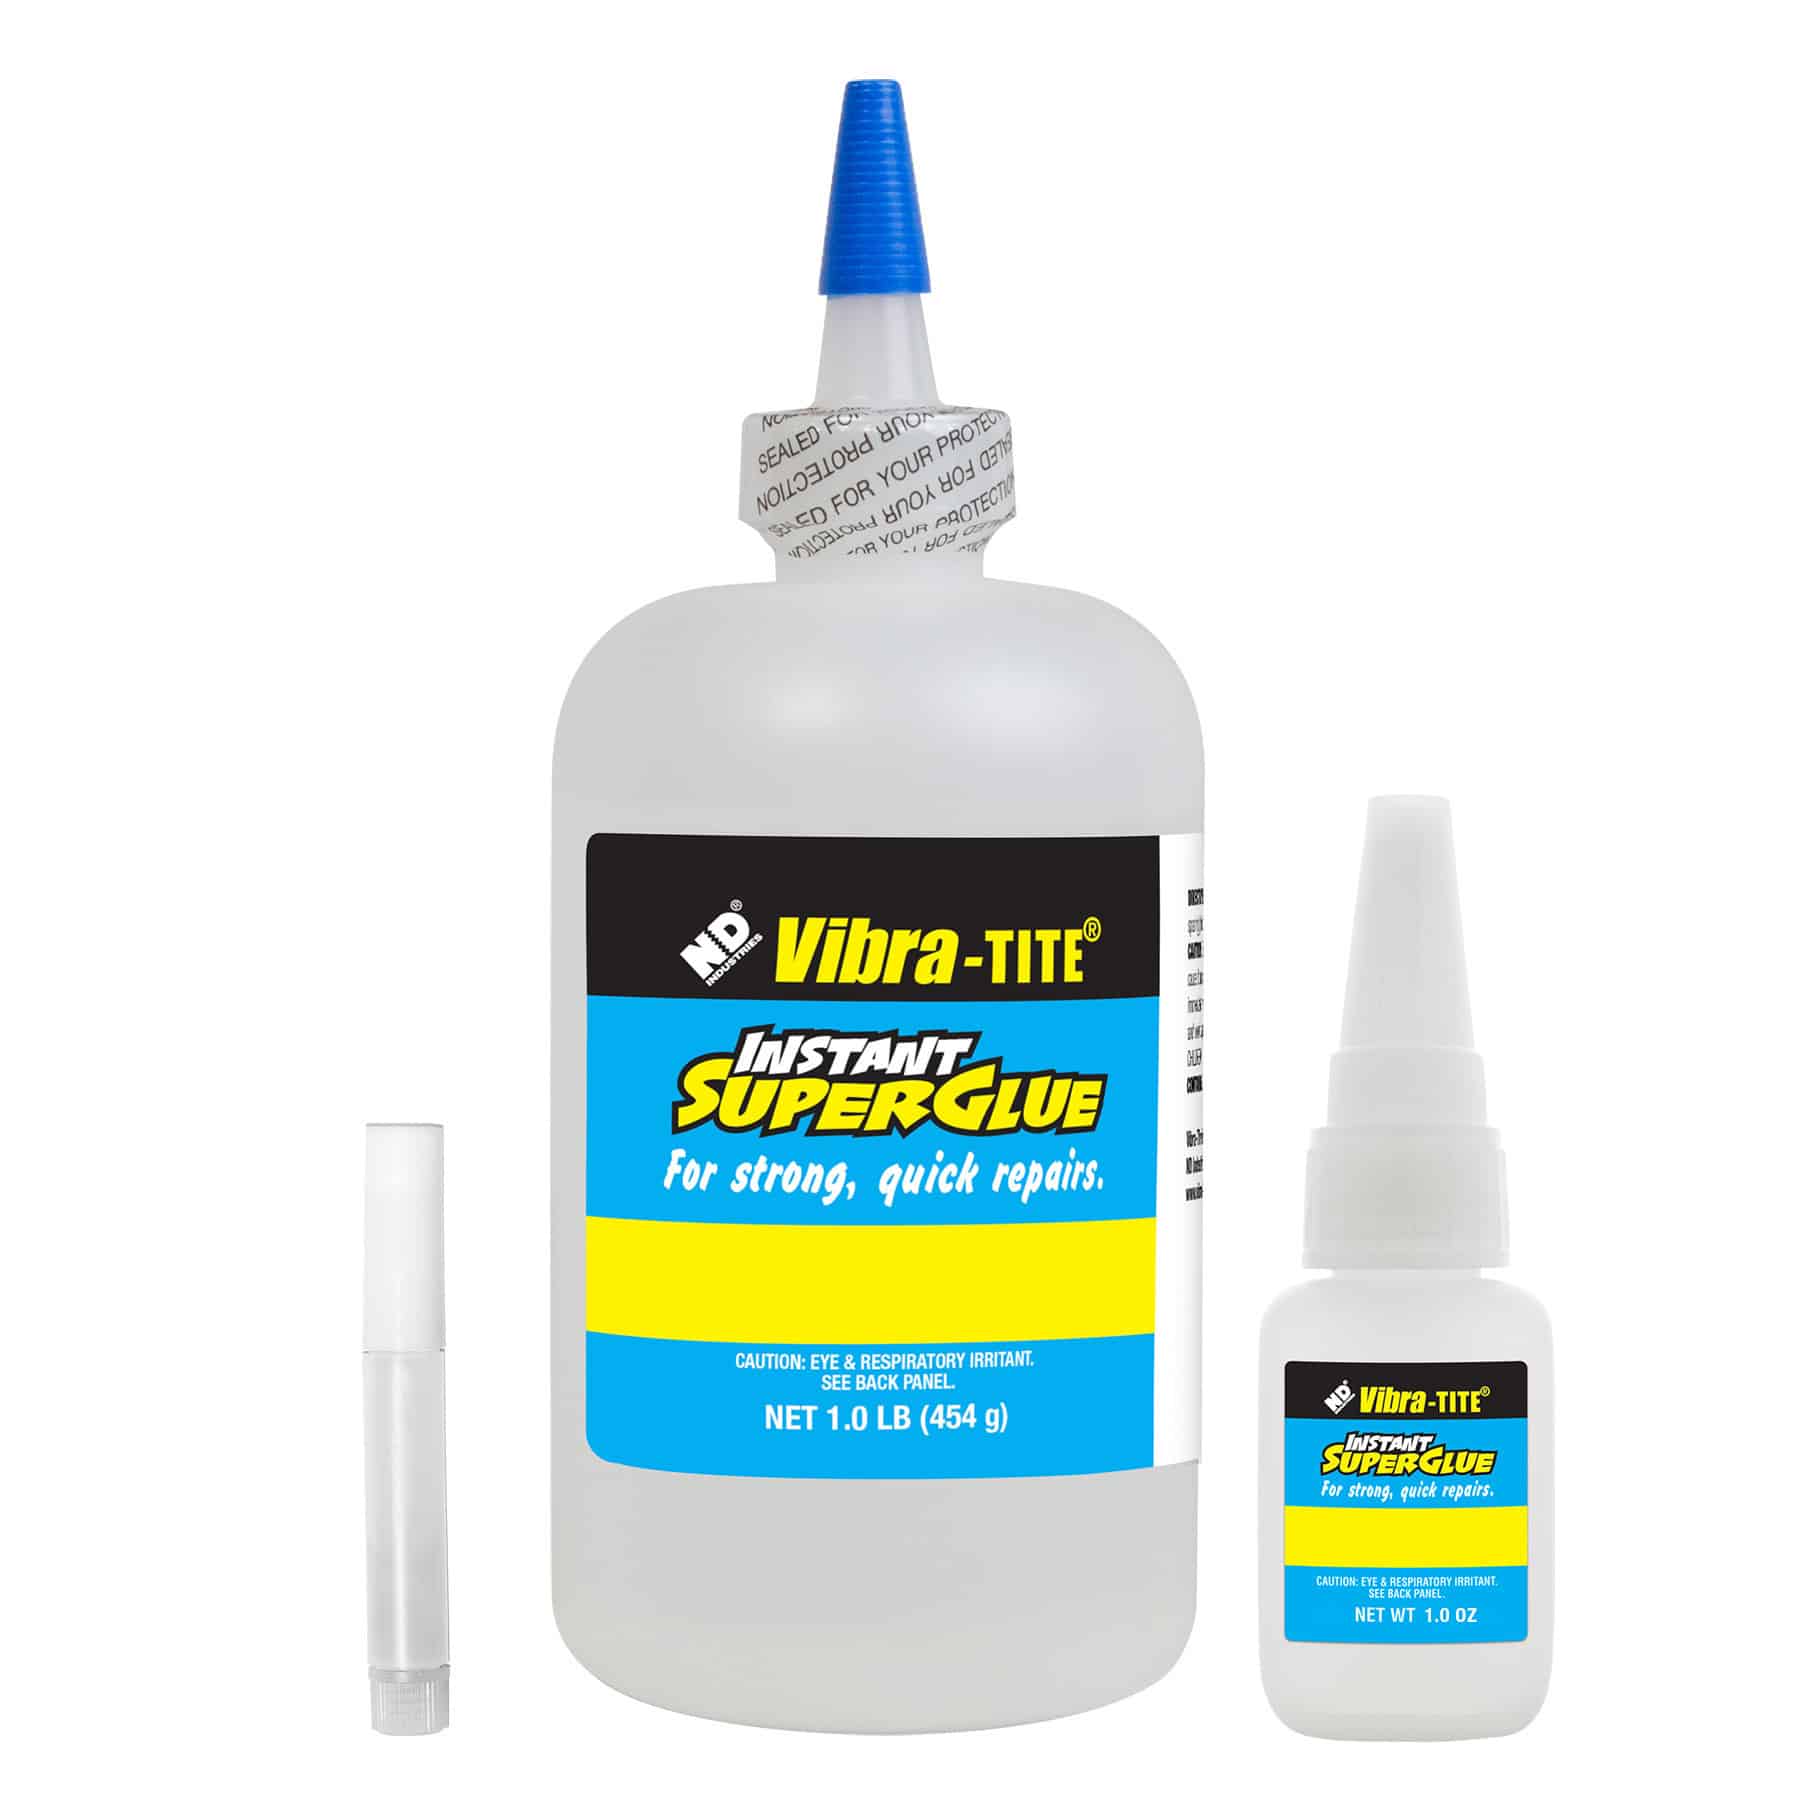 Vibra-Tite 322 Gap Filling Plastic Bonding Cyanoacrylate – Vibra-Tite